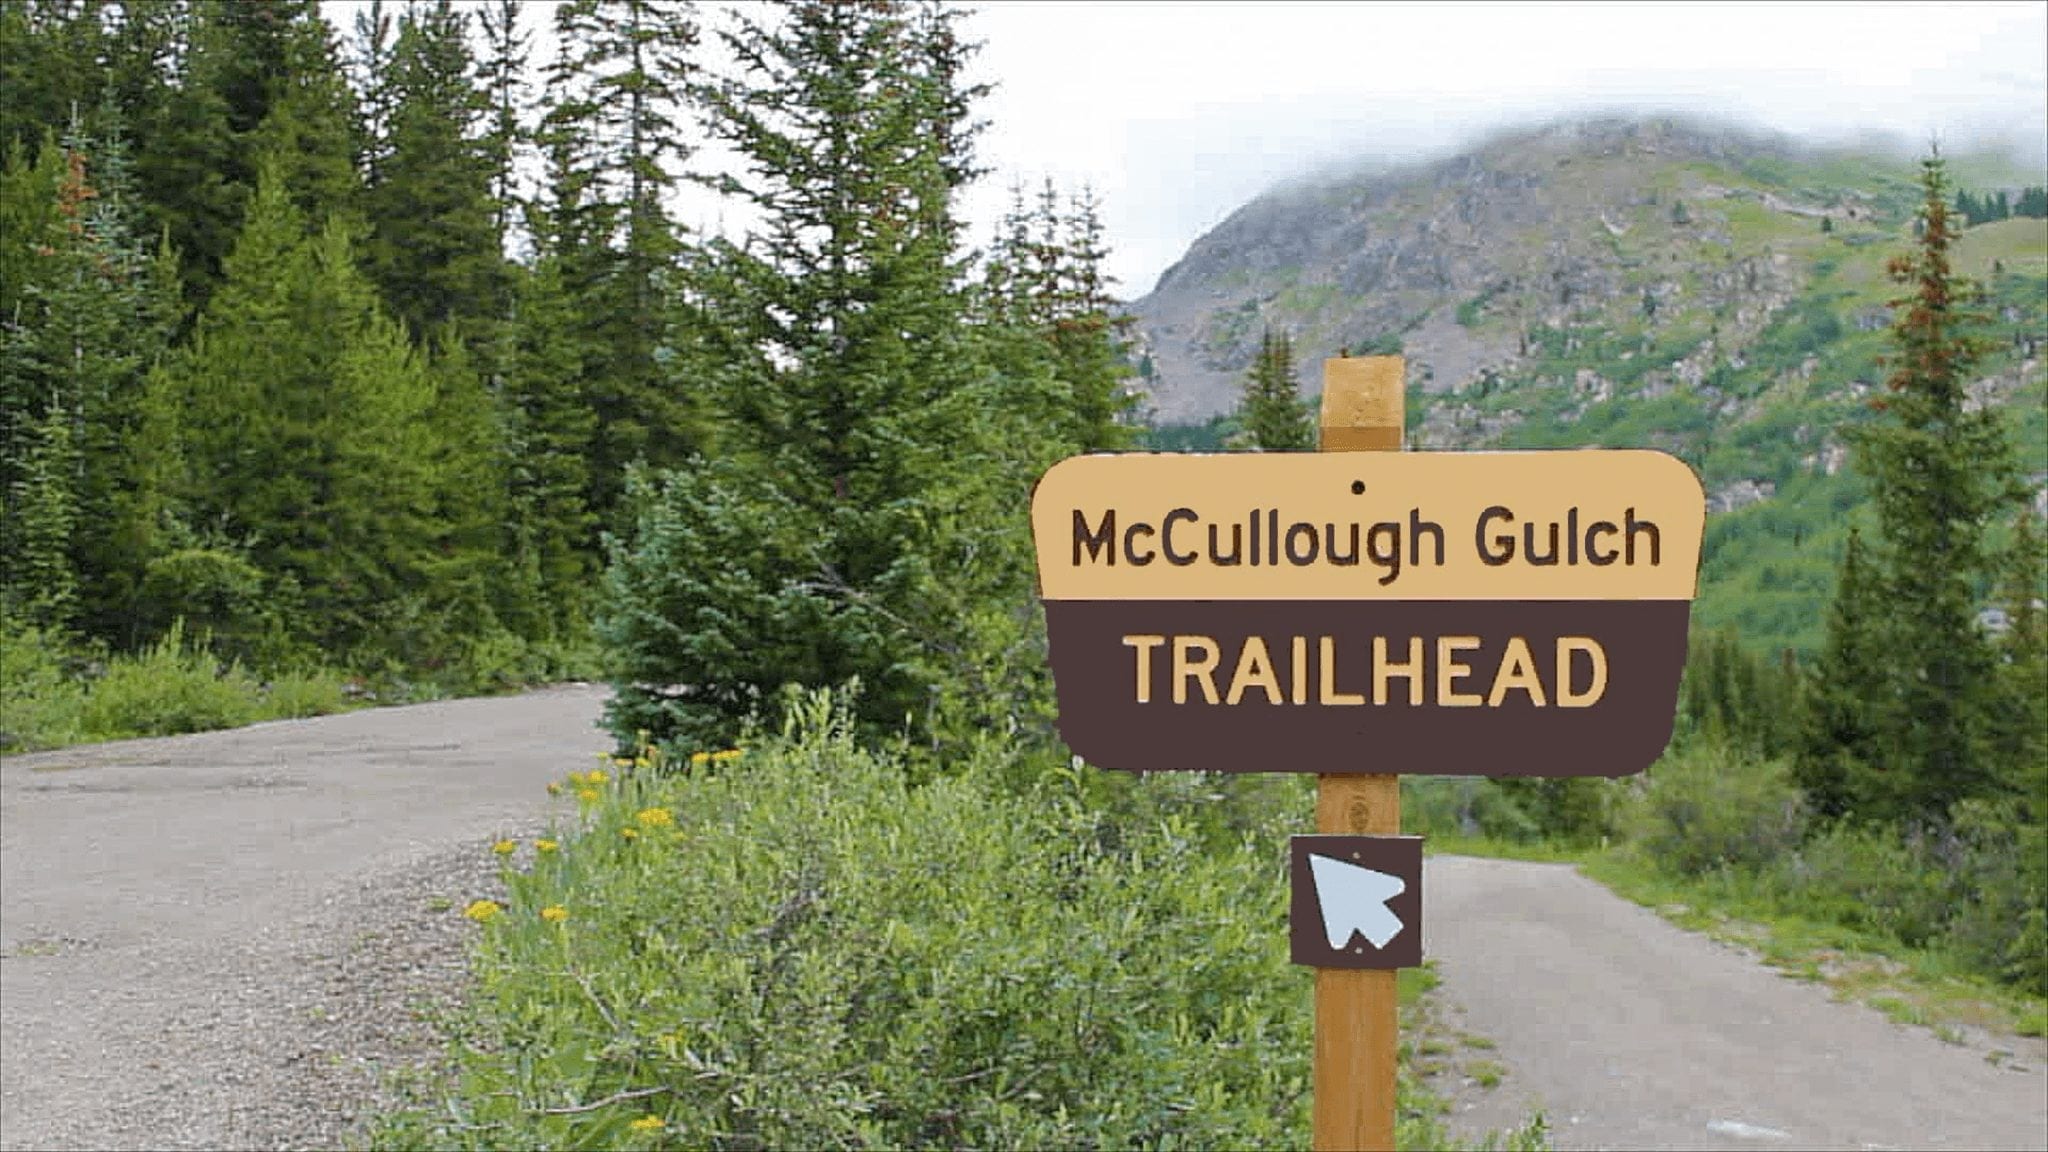 Mc Collough Gulch trailhead sign in Breckenridge